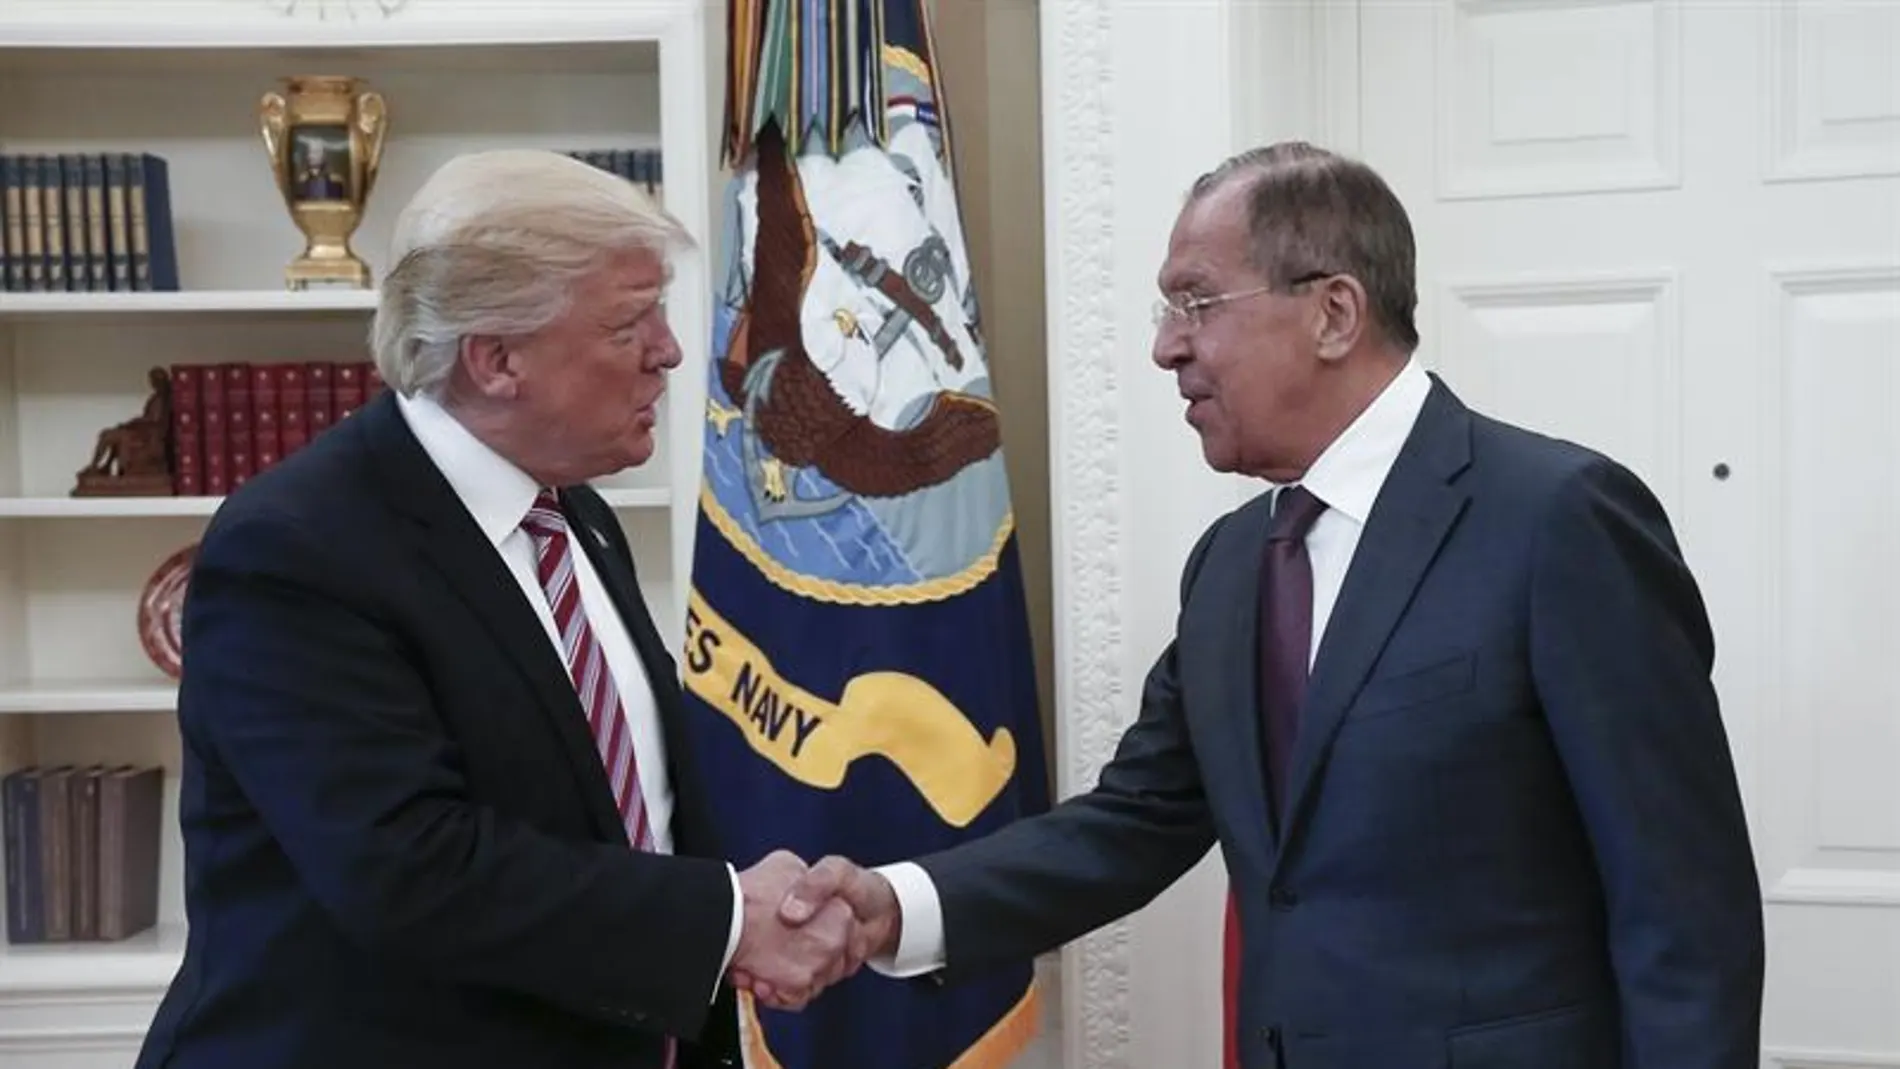 Donald Trump y Seguéi Lavrov, en su encuentro en la Casa Blanca